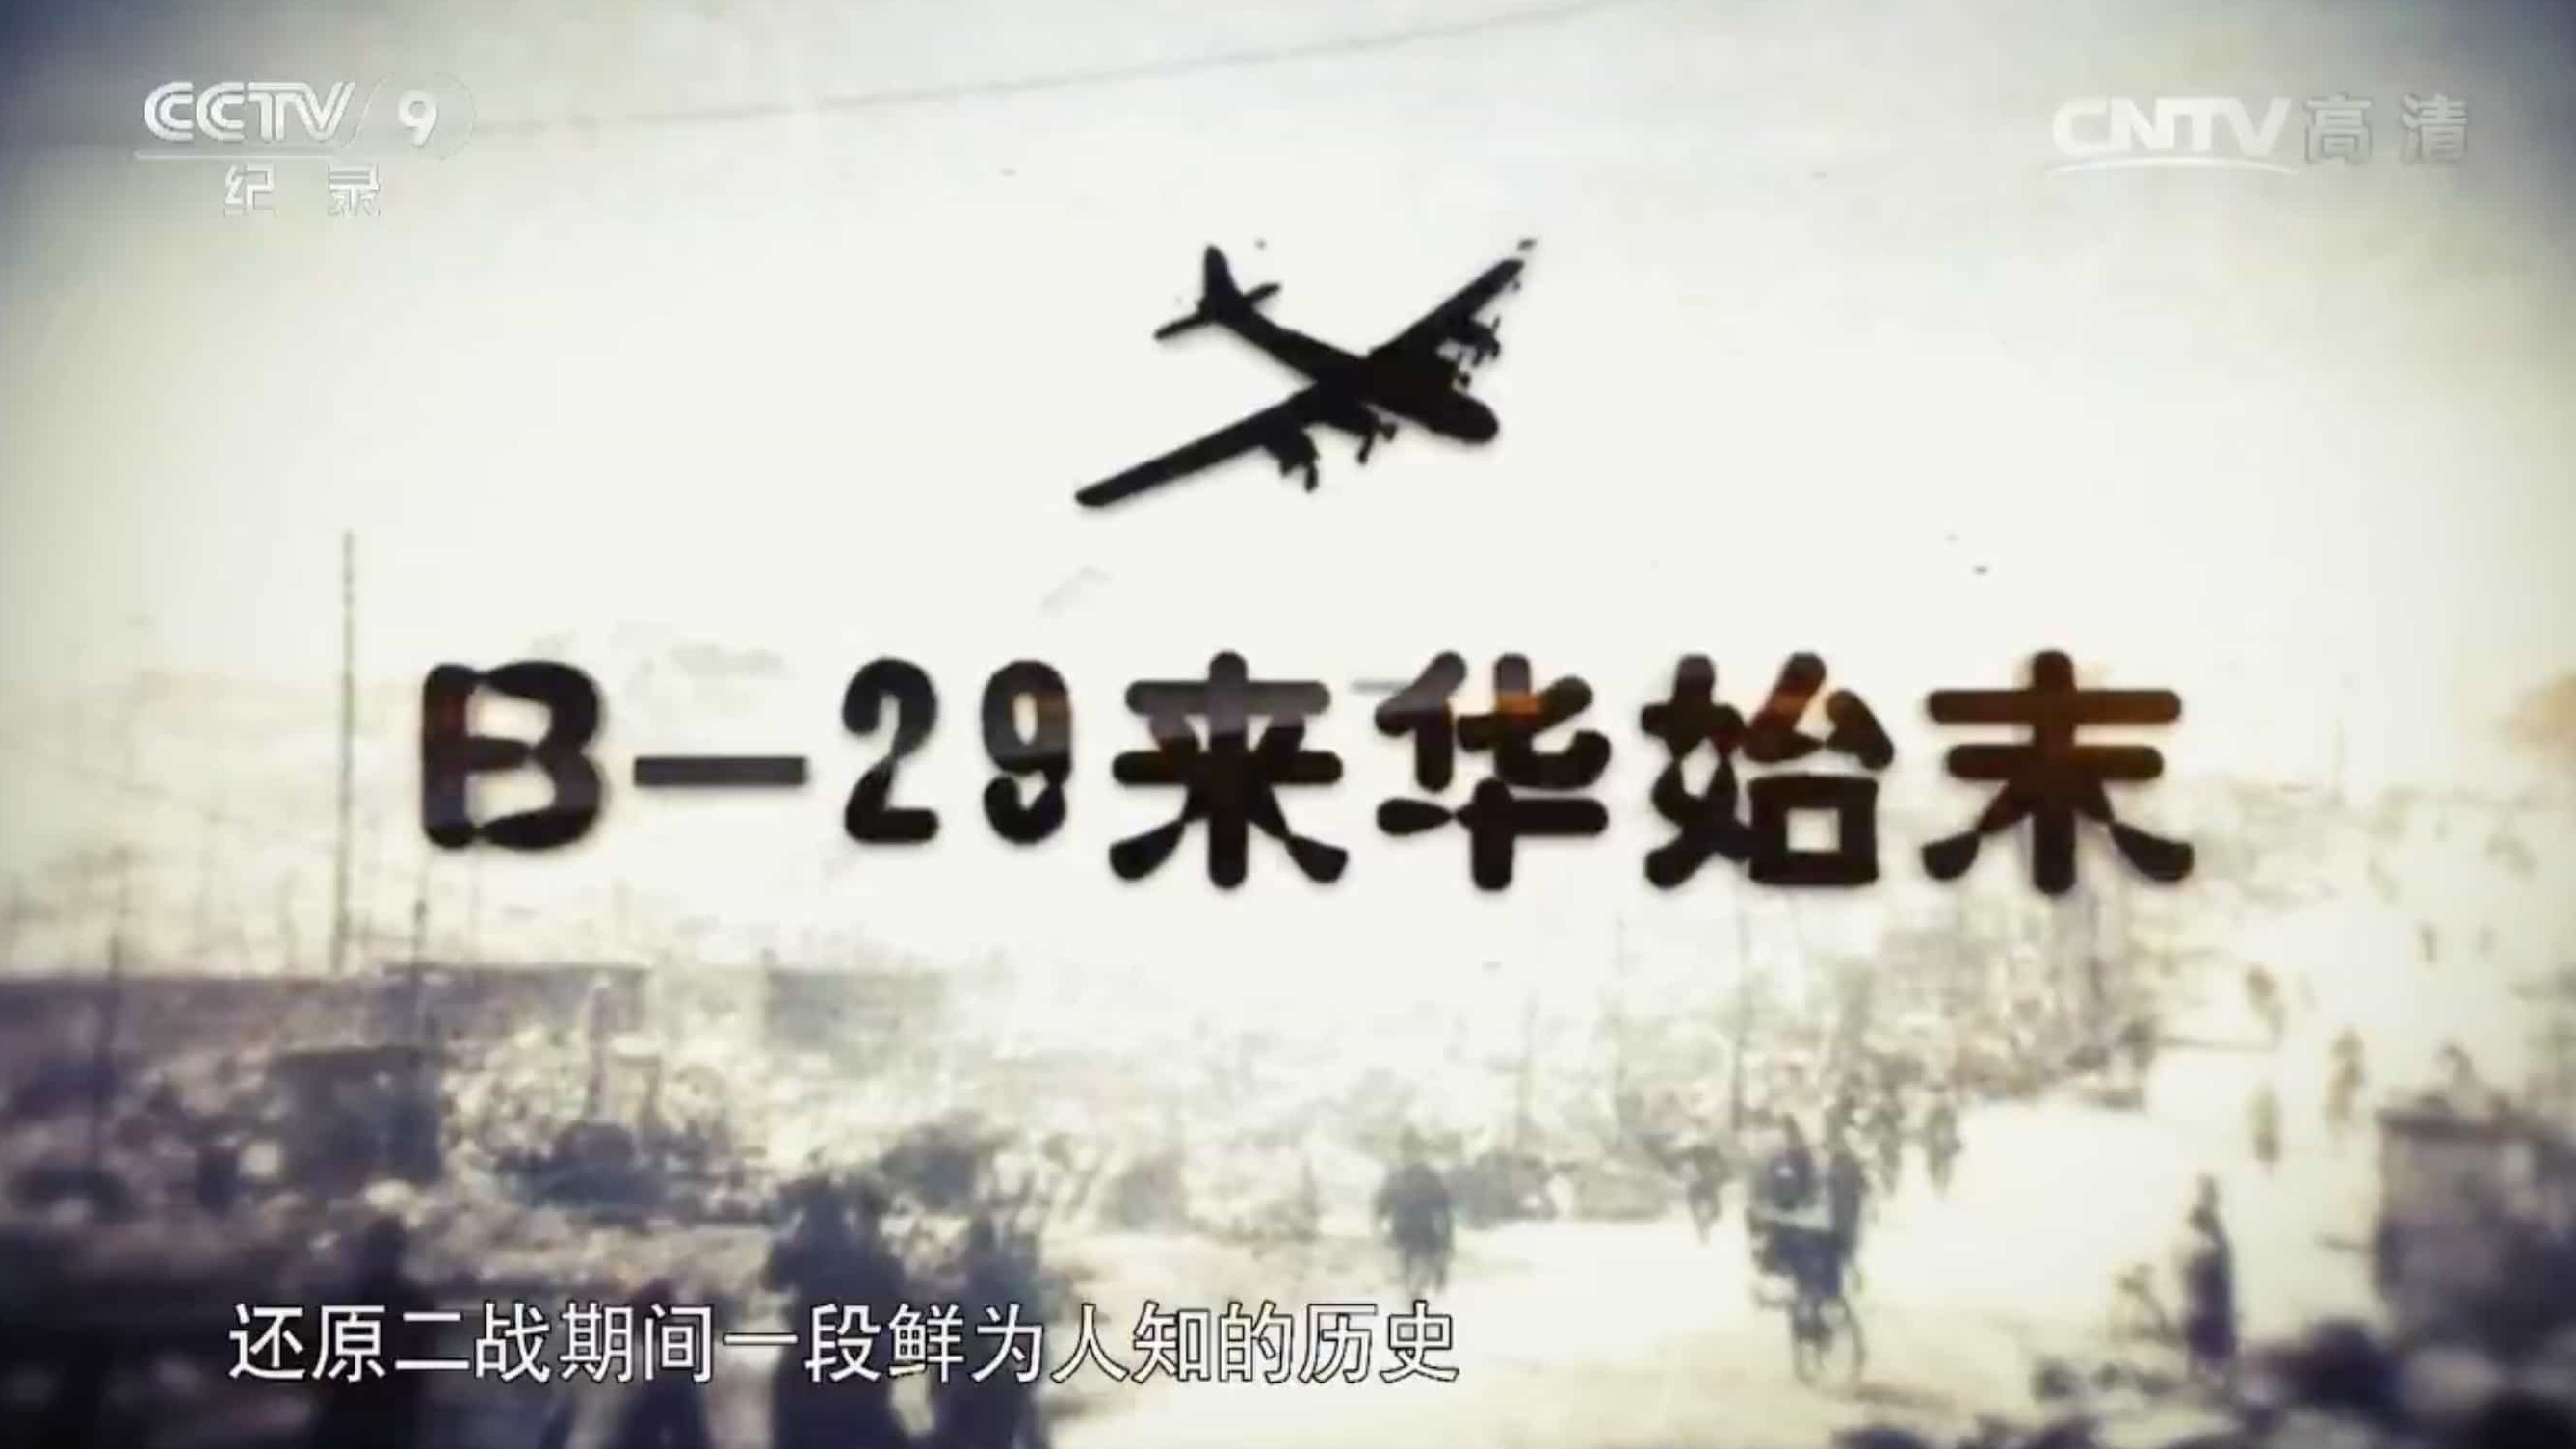 央视纪录片《B-29来华始末》全6集 汉语中字